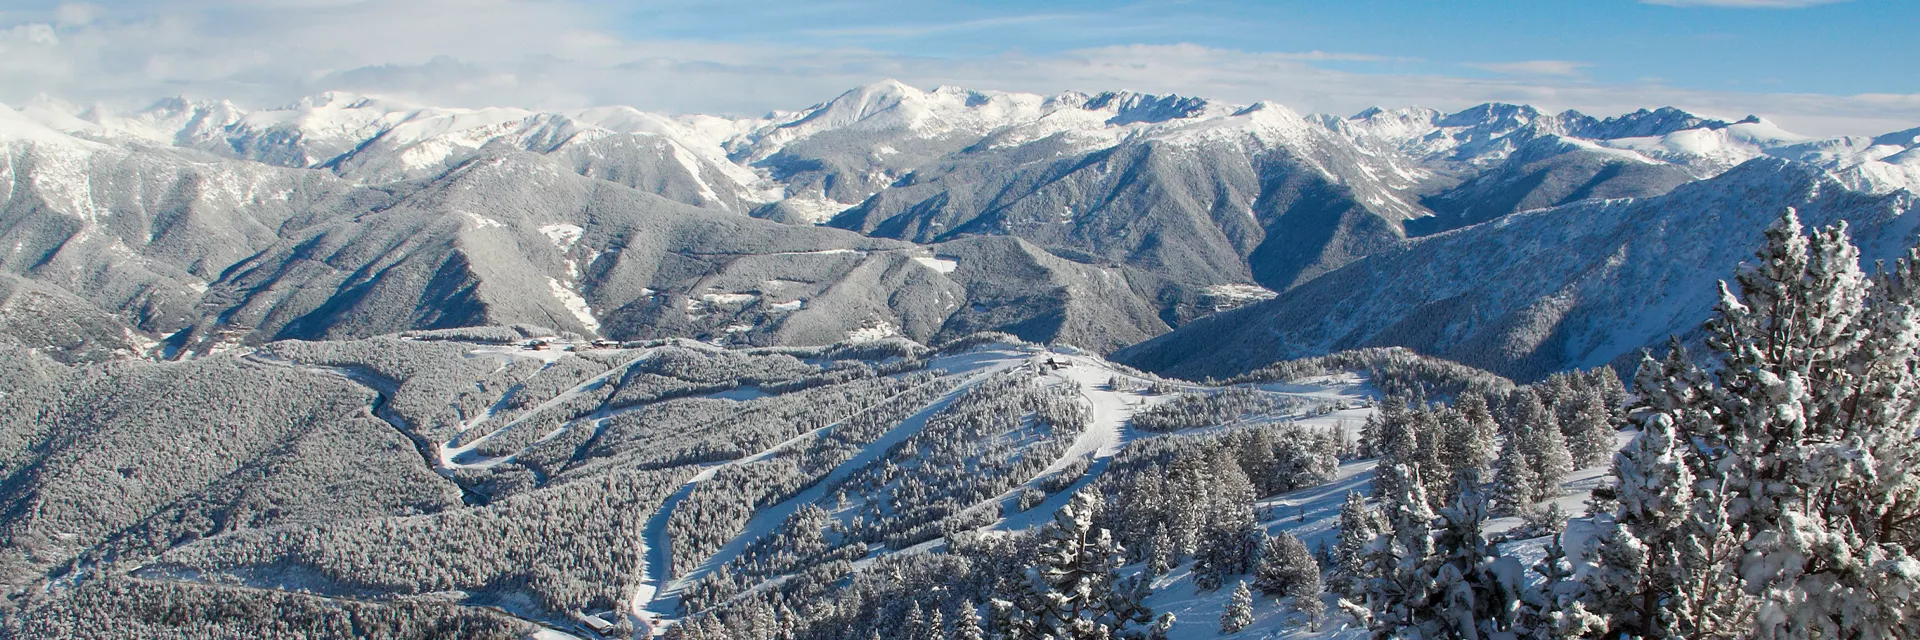 Location de vacances dans les Pyrénées - hiver